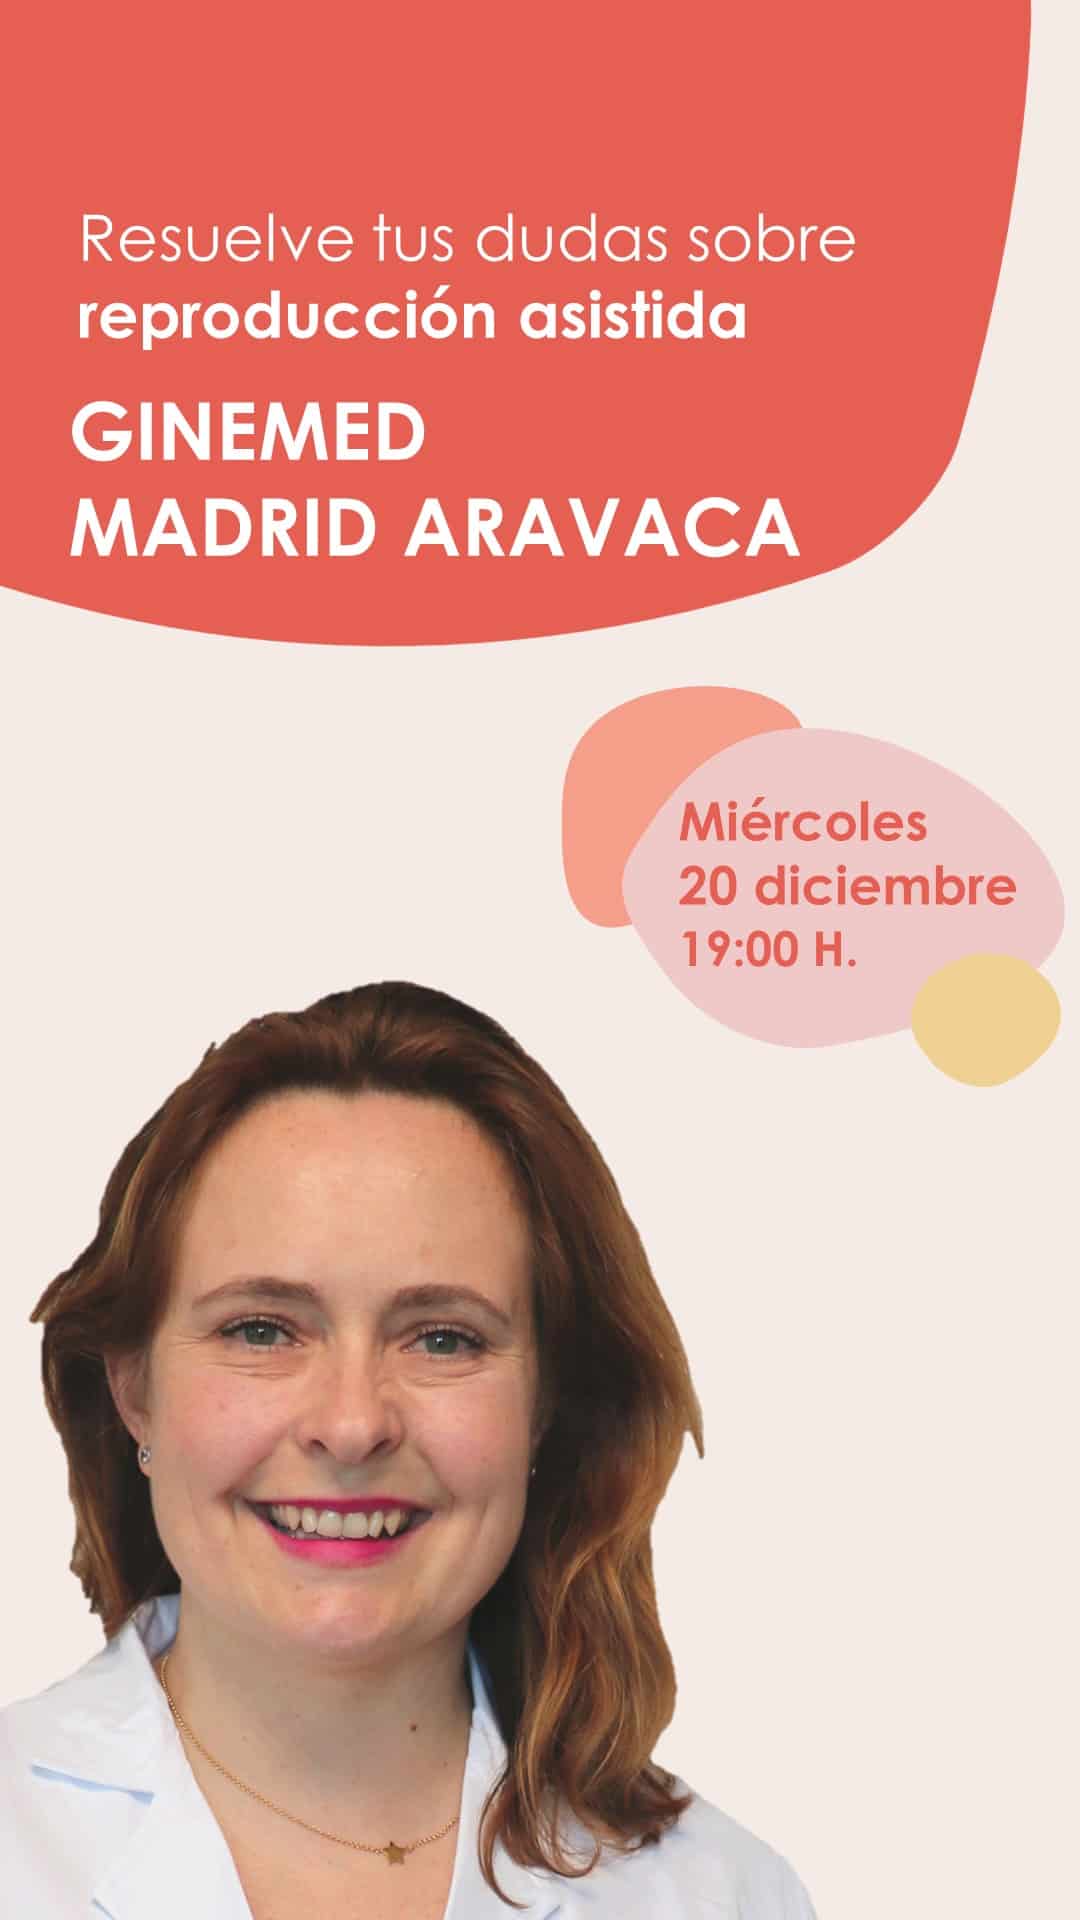 Instagram Live el miércoles 20 de diciembre a las 19 horas desde la clínica de reproducción asistida Ginemed Madrid Aravaca